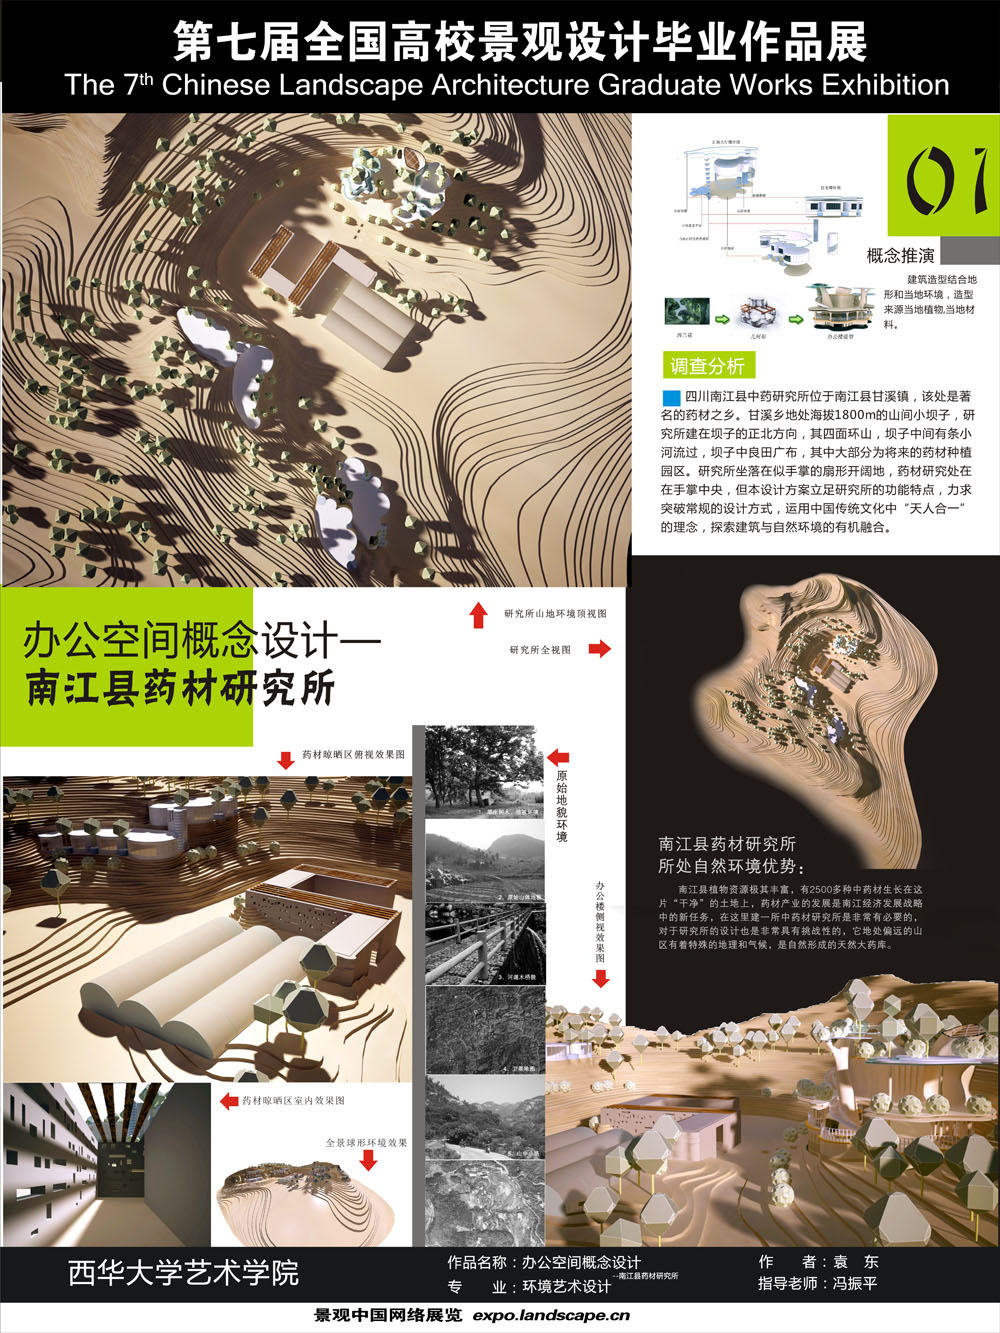 办公空间概念设计——南江县药材研究所-1